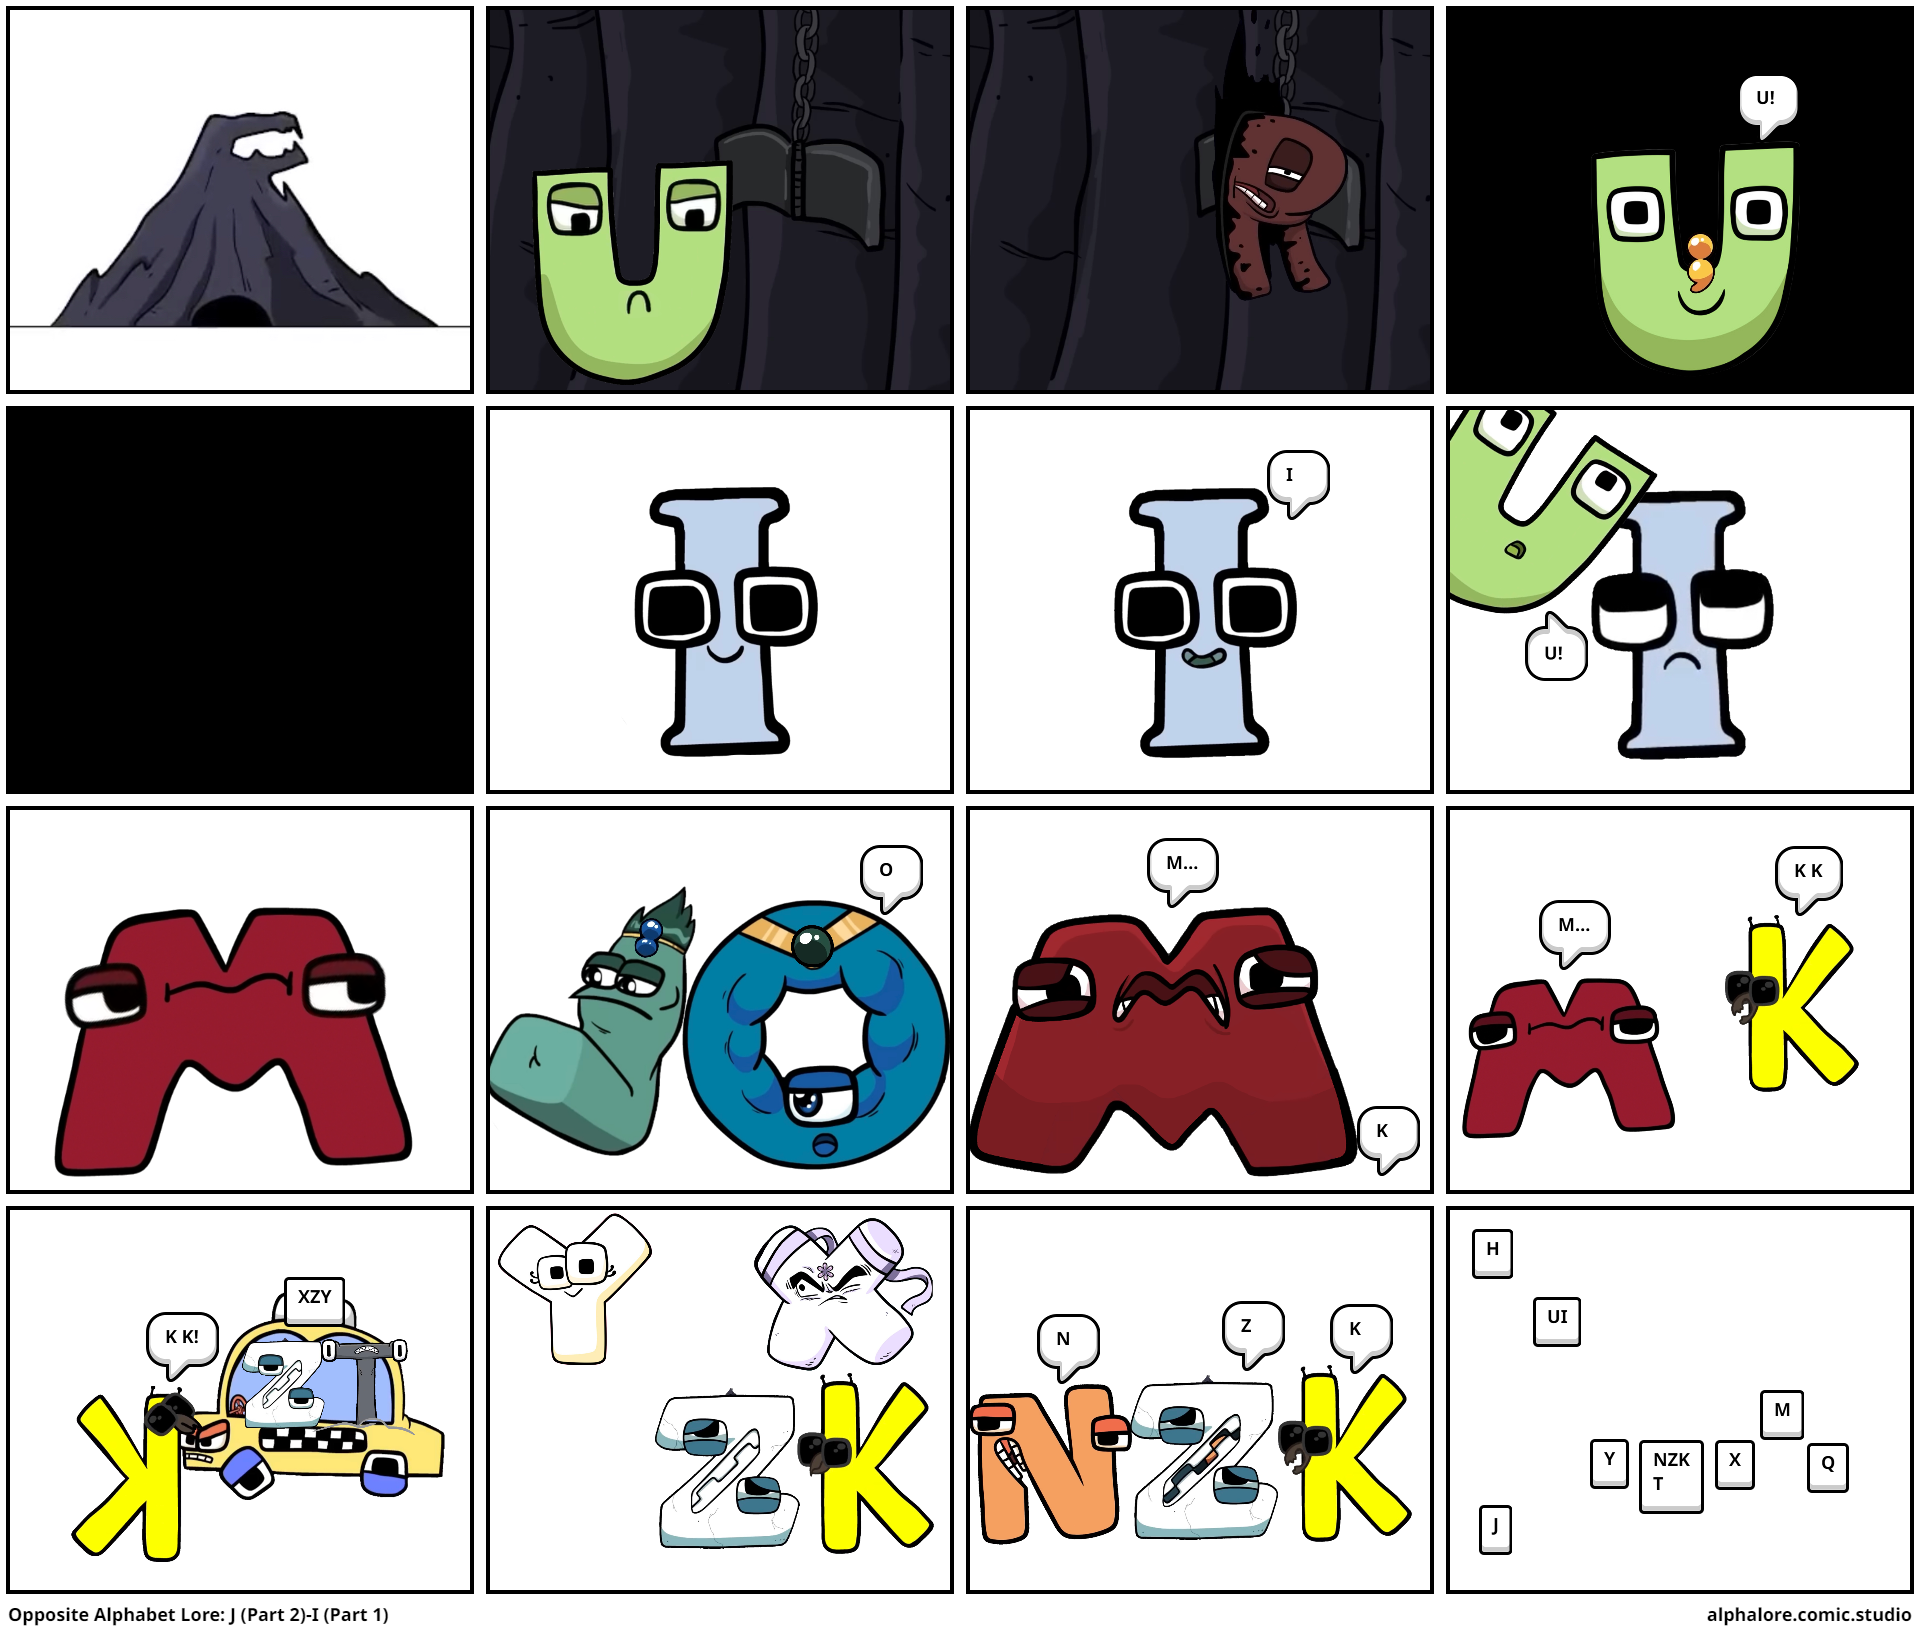 Opposite Alphabet Lore: J (Part 2)-I (Part 1) - Comic Studio